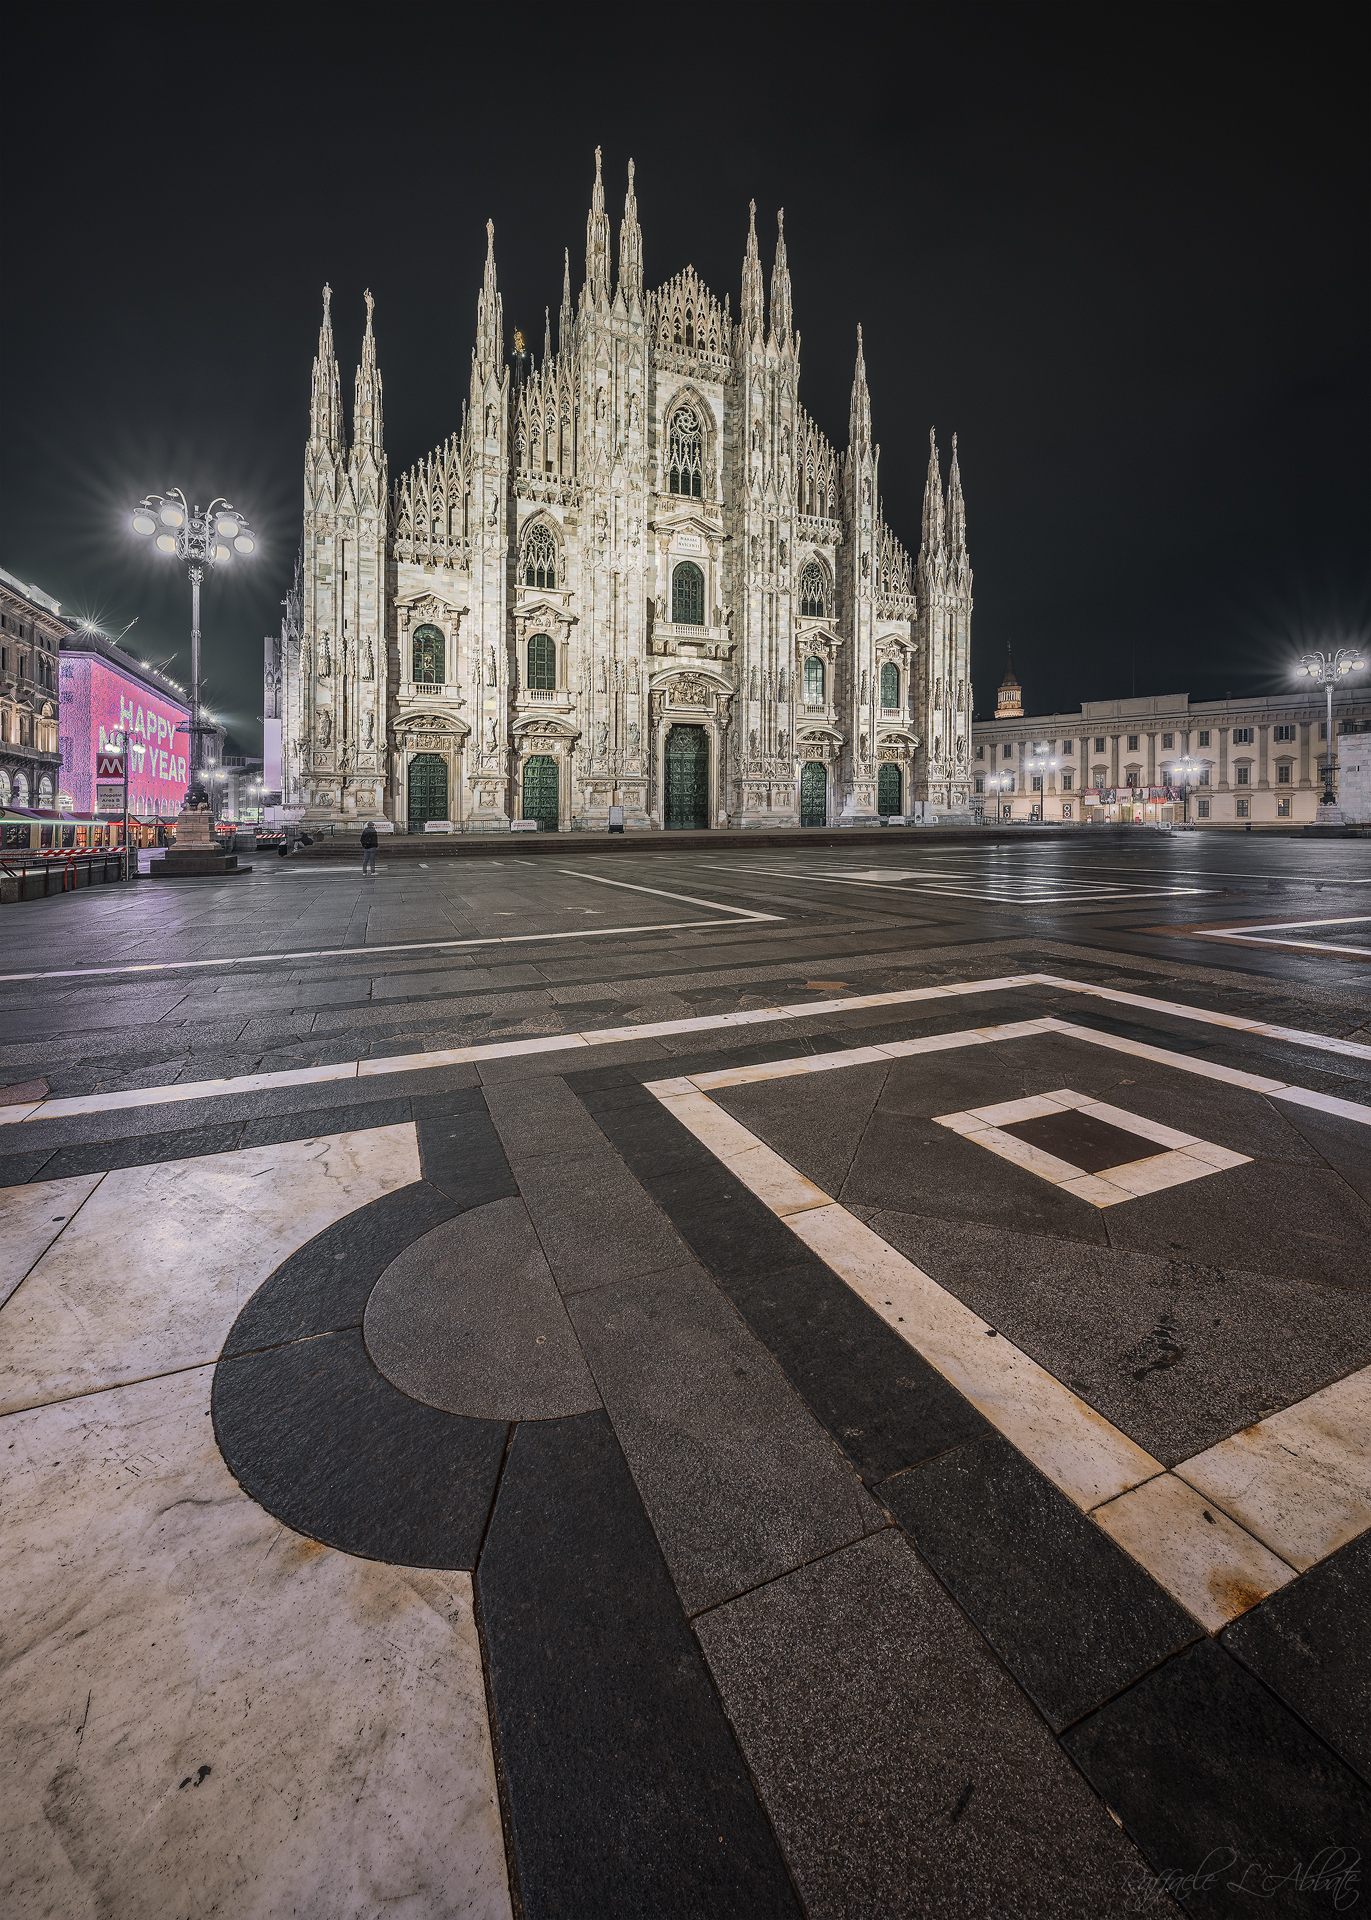 Piazza del Duomo in Milan ...